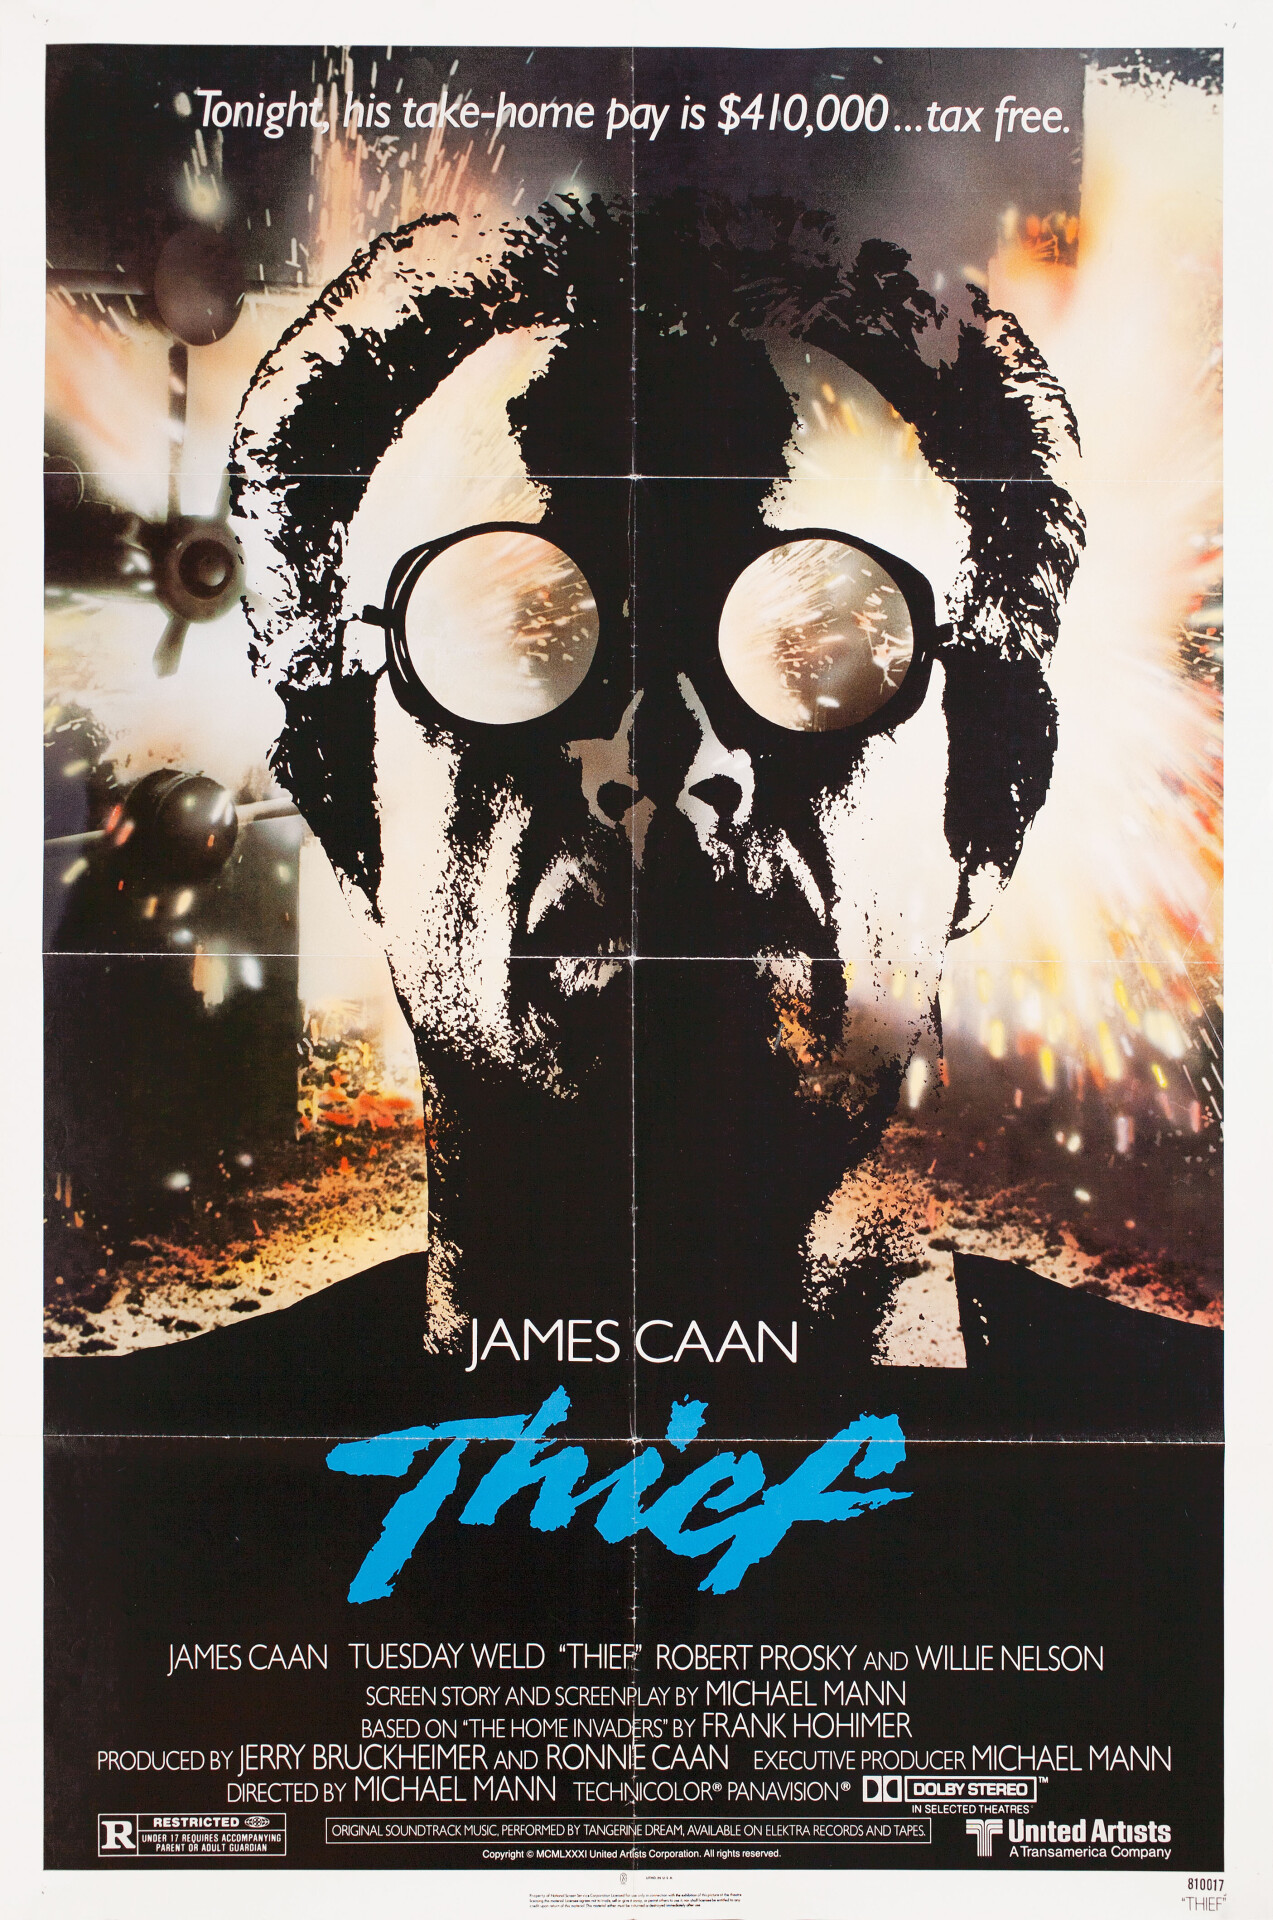 Вор (Thief, 1981), режиссёр Майкл Манн, американский постер к фильму (графический дизайн, 1981 год)